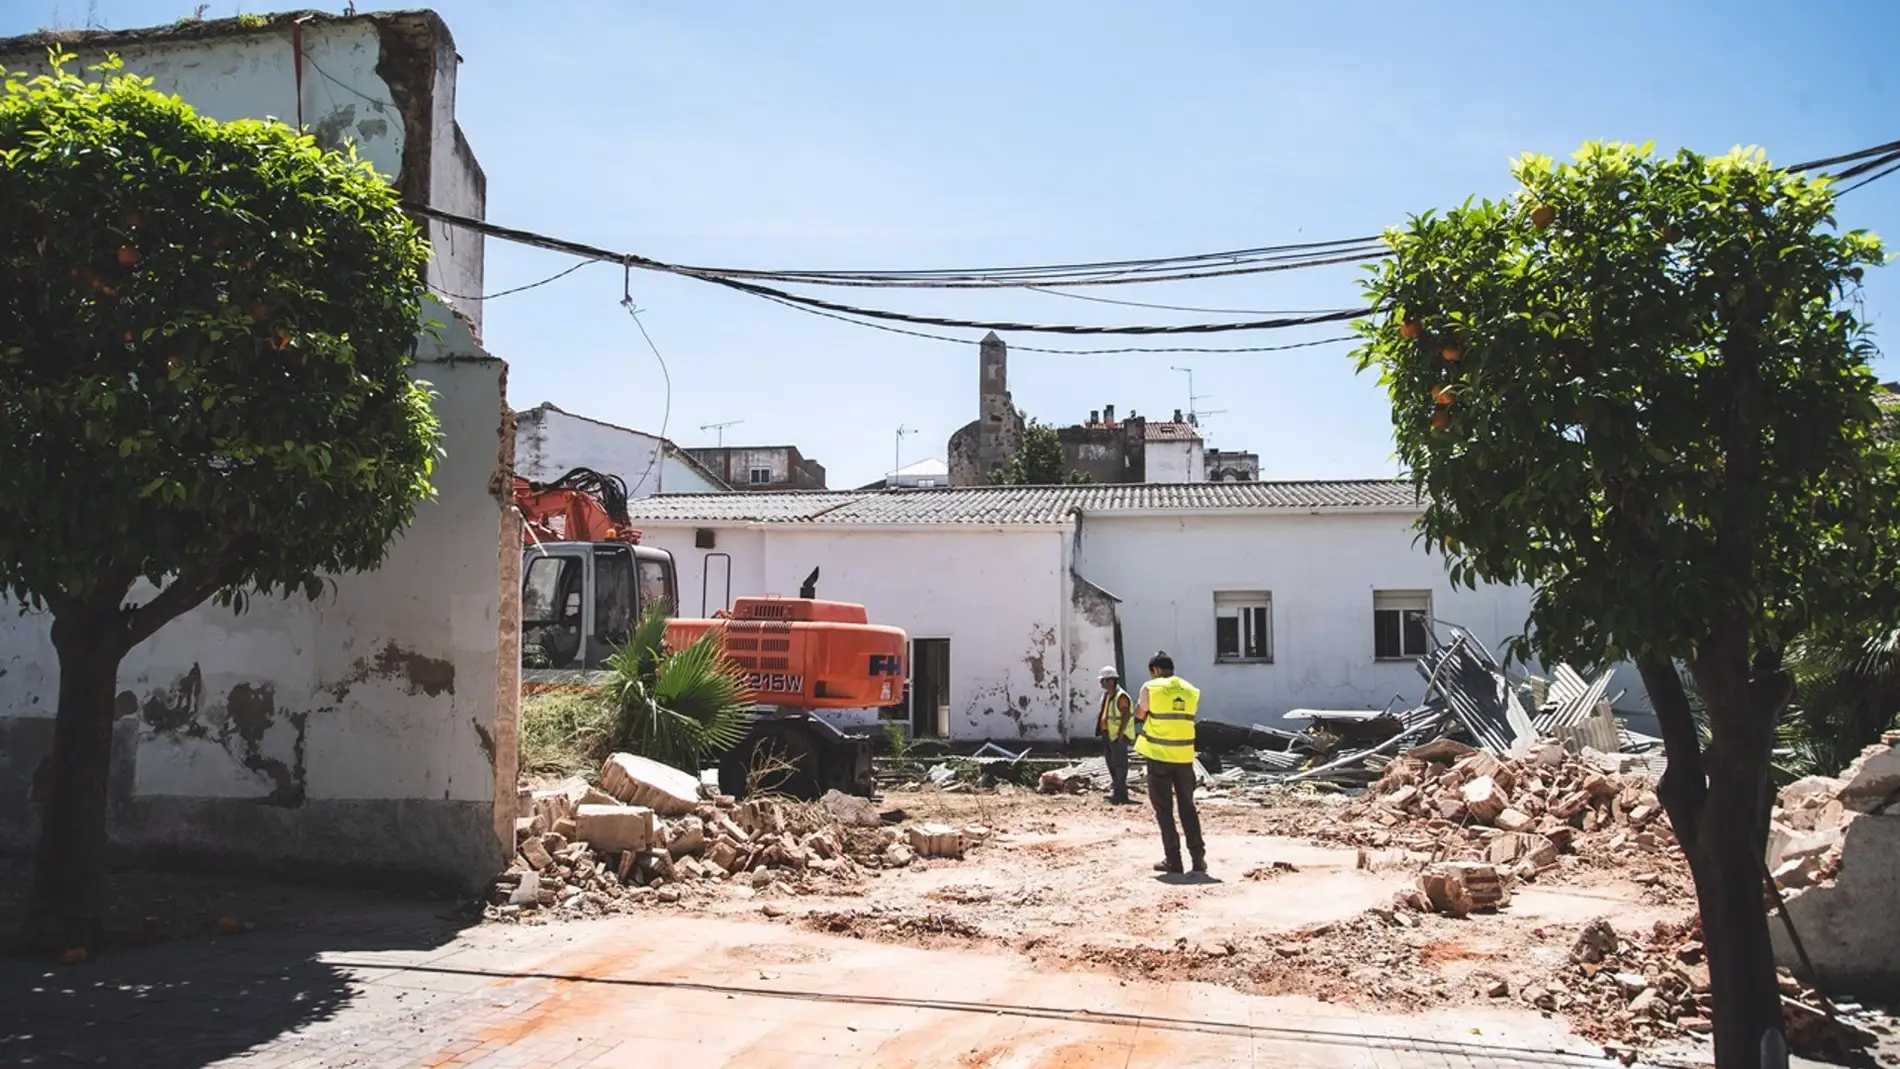 La aparición de restos arqueológicos paralizan dos meses la obra en el antiguo convento de las Concepcionistas de Mérida